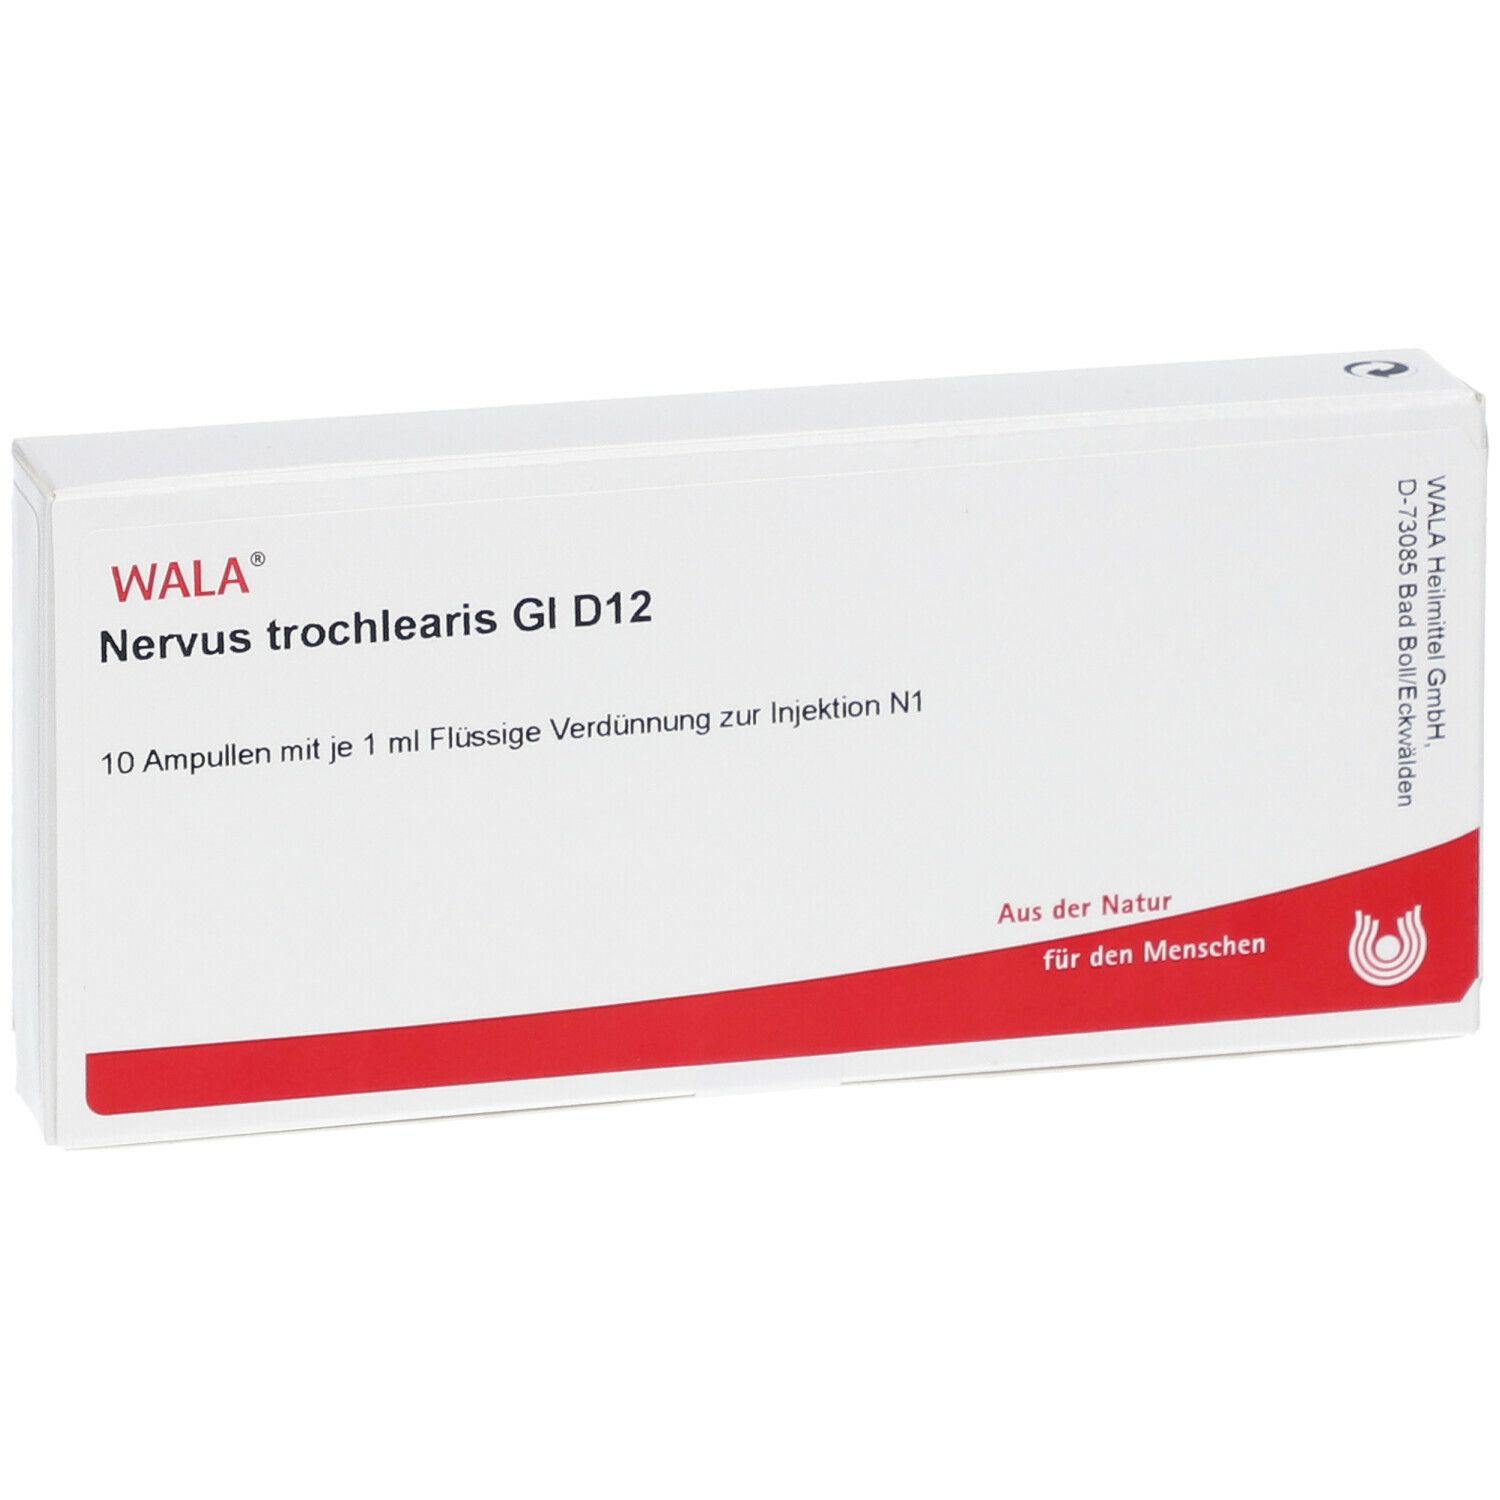 WALA® Nervus trochlearis Gl D 12